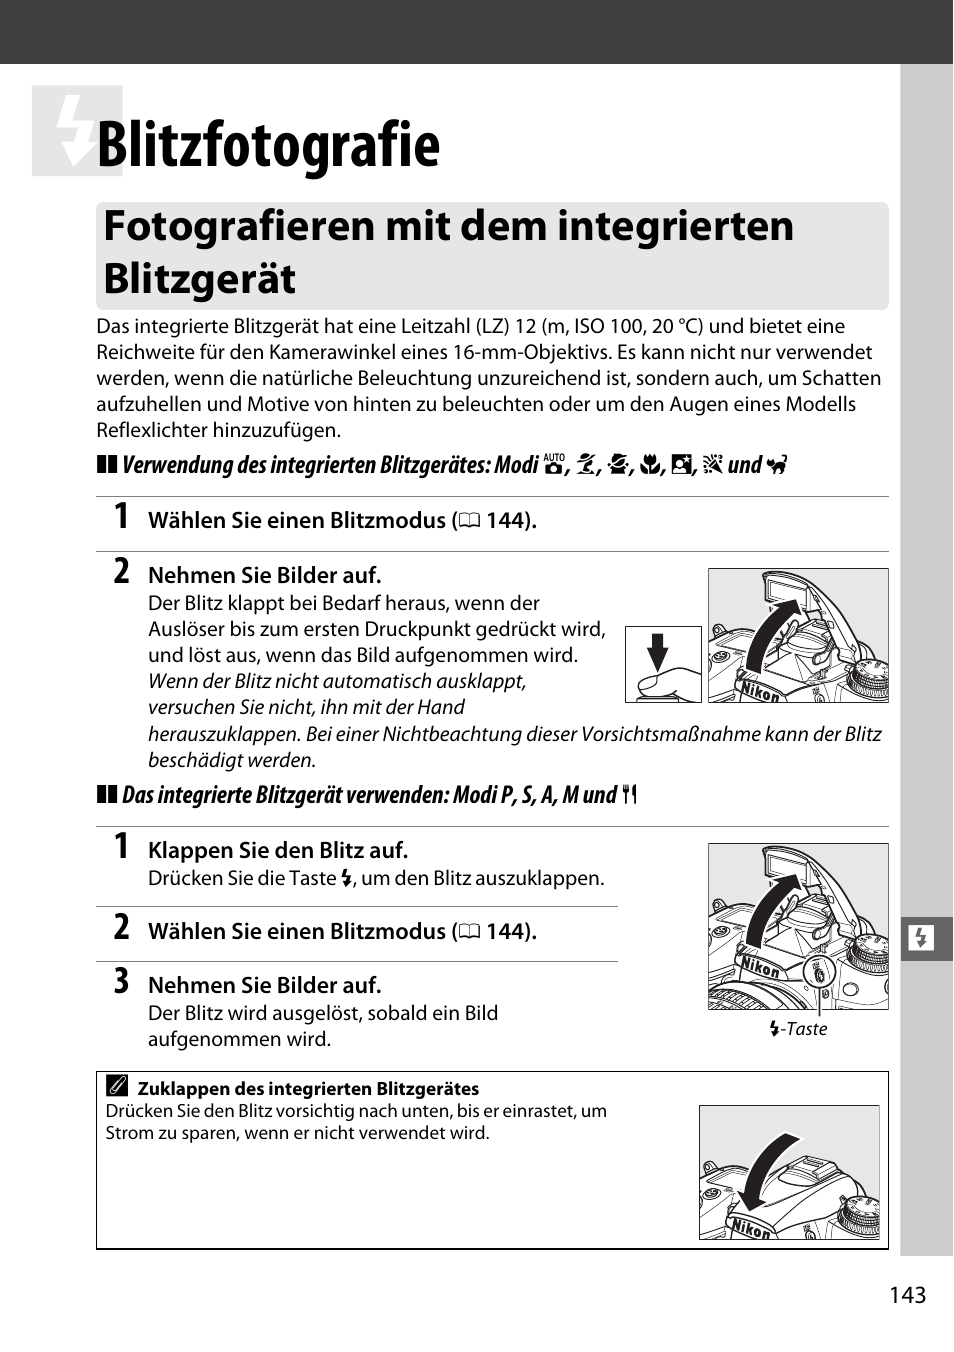 Blitzfotografie, Fotografieren mit dem integrierten blitzgerät | Nikon D7000 Benutzerhandbuch | Seite 163 / 348